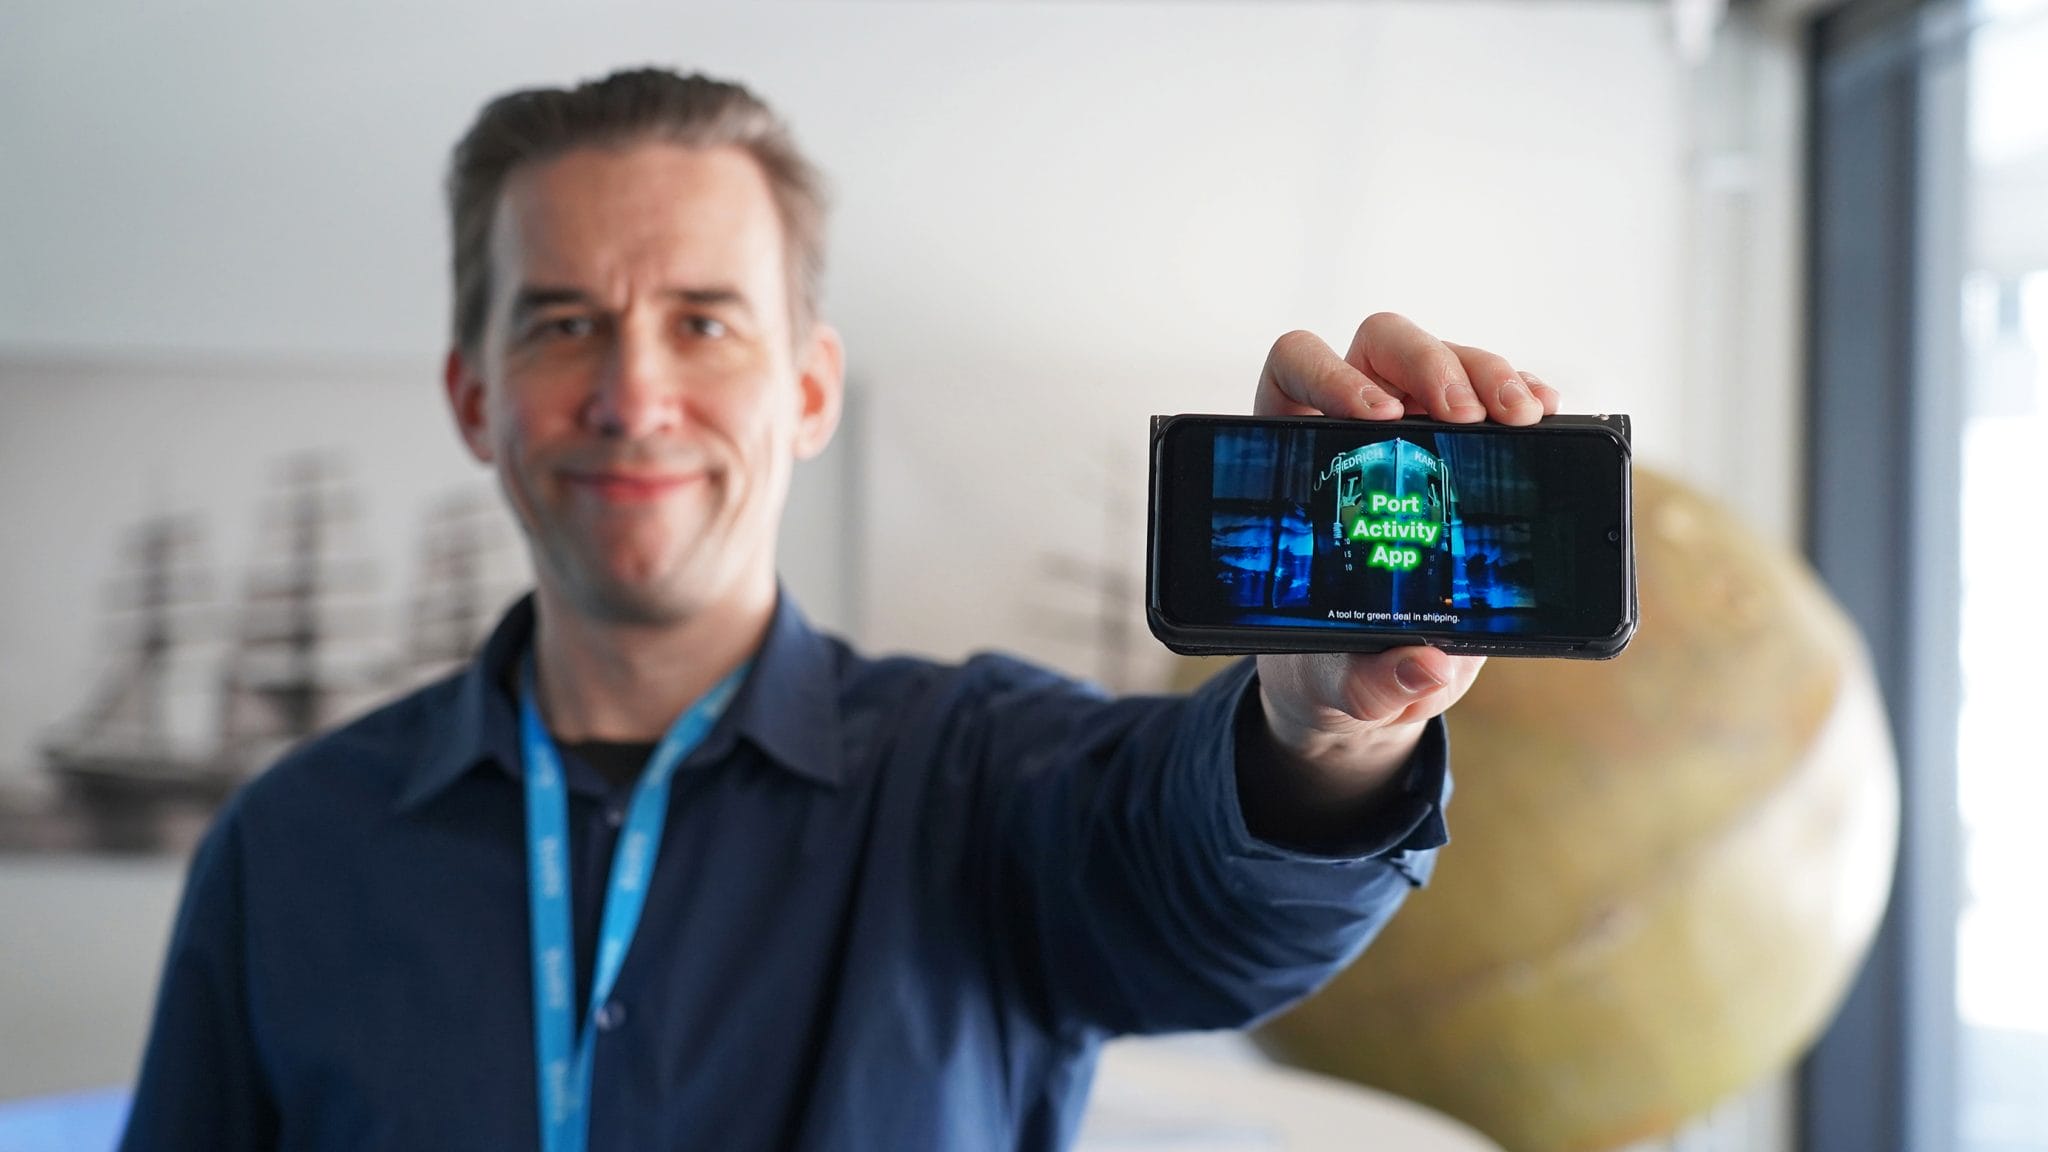 Petteri Hyvärinen pitää kädessään älypuhelinta, jonka ruudulla näkyy Port Activity App -kilpailuvideo.